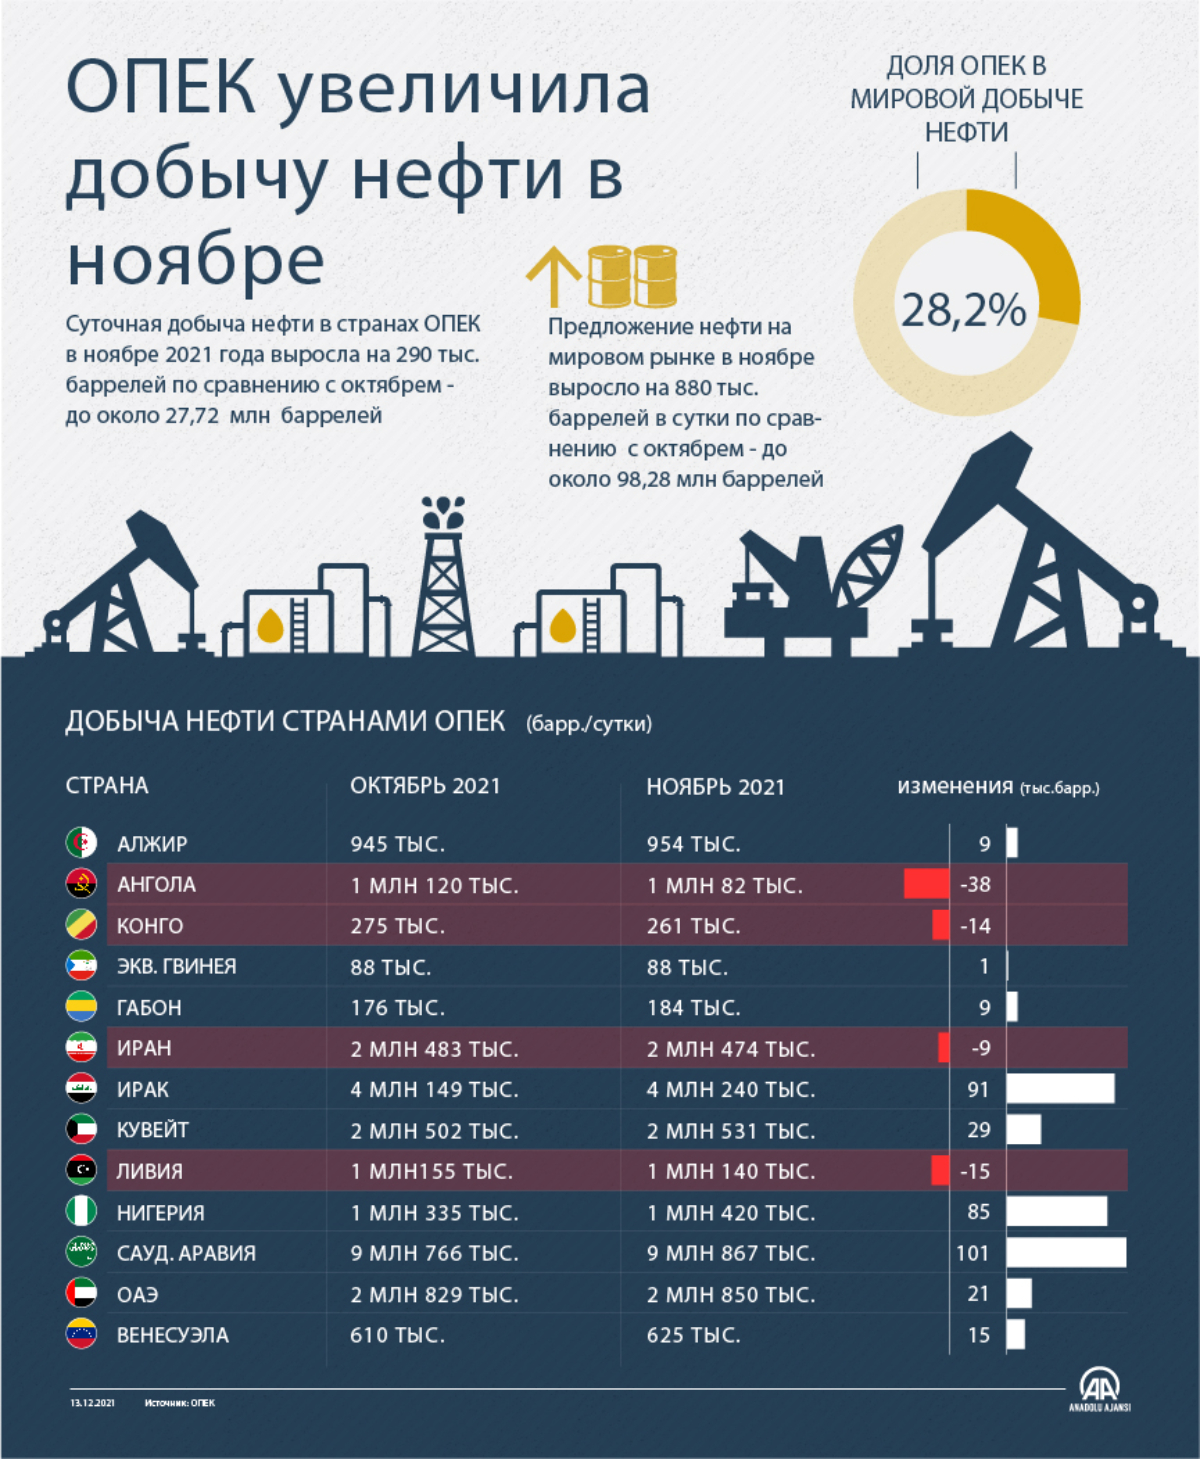 ОПЕК увеличила добычу нефти в ноябре 